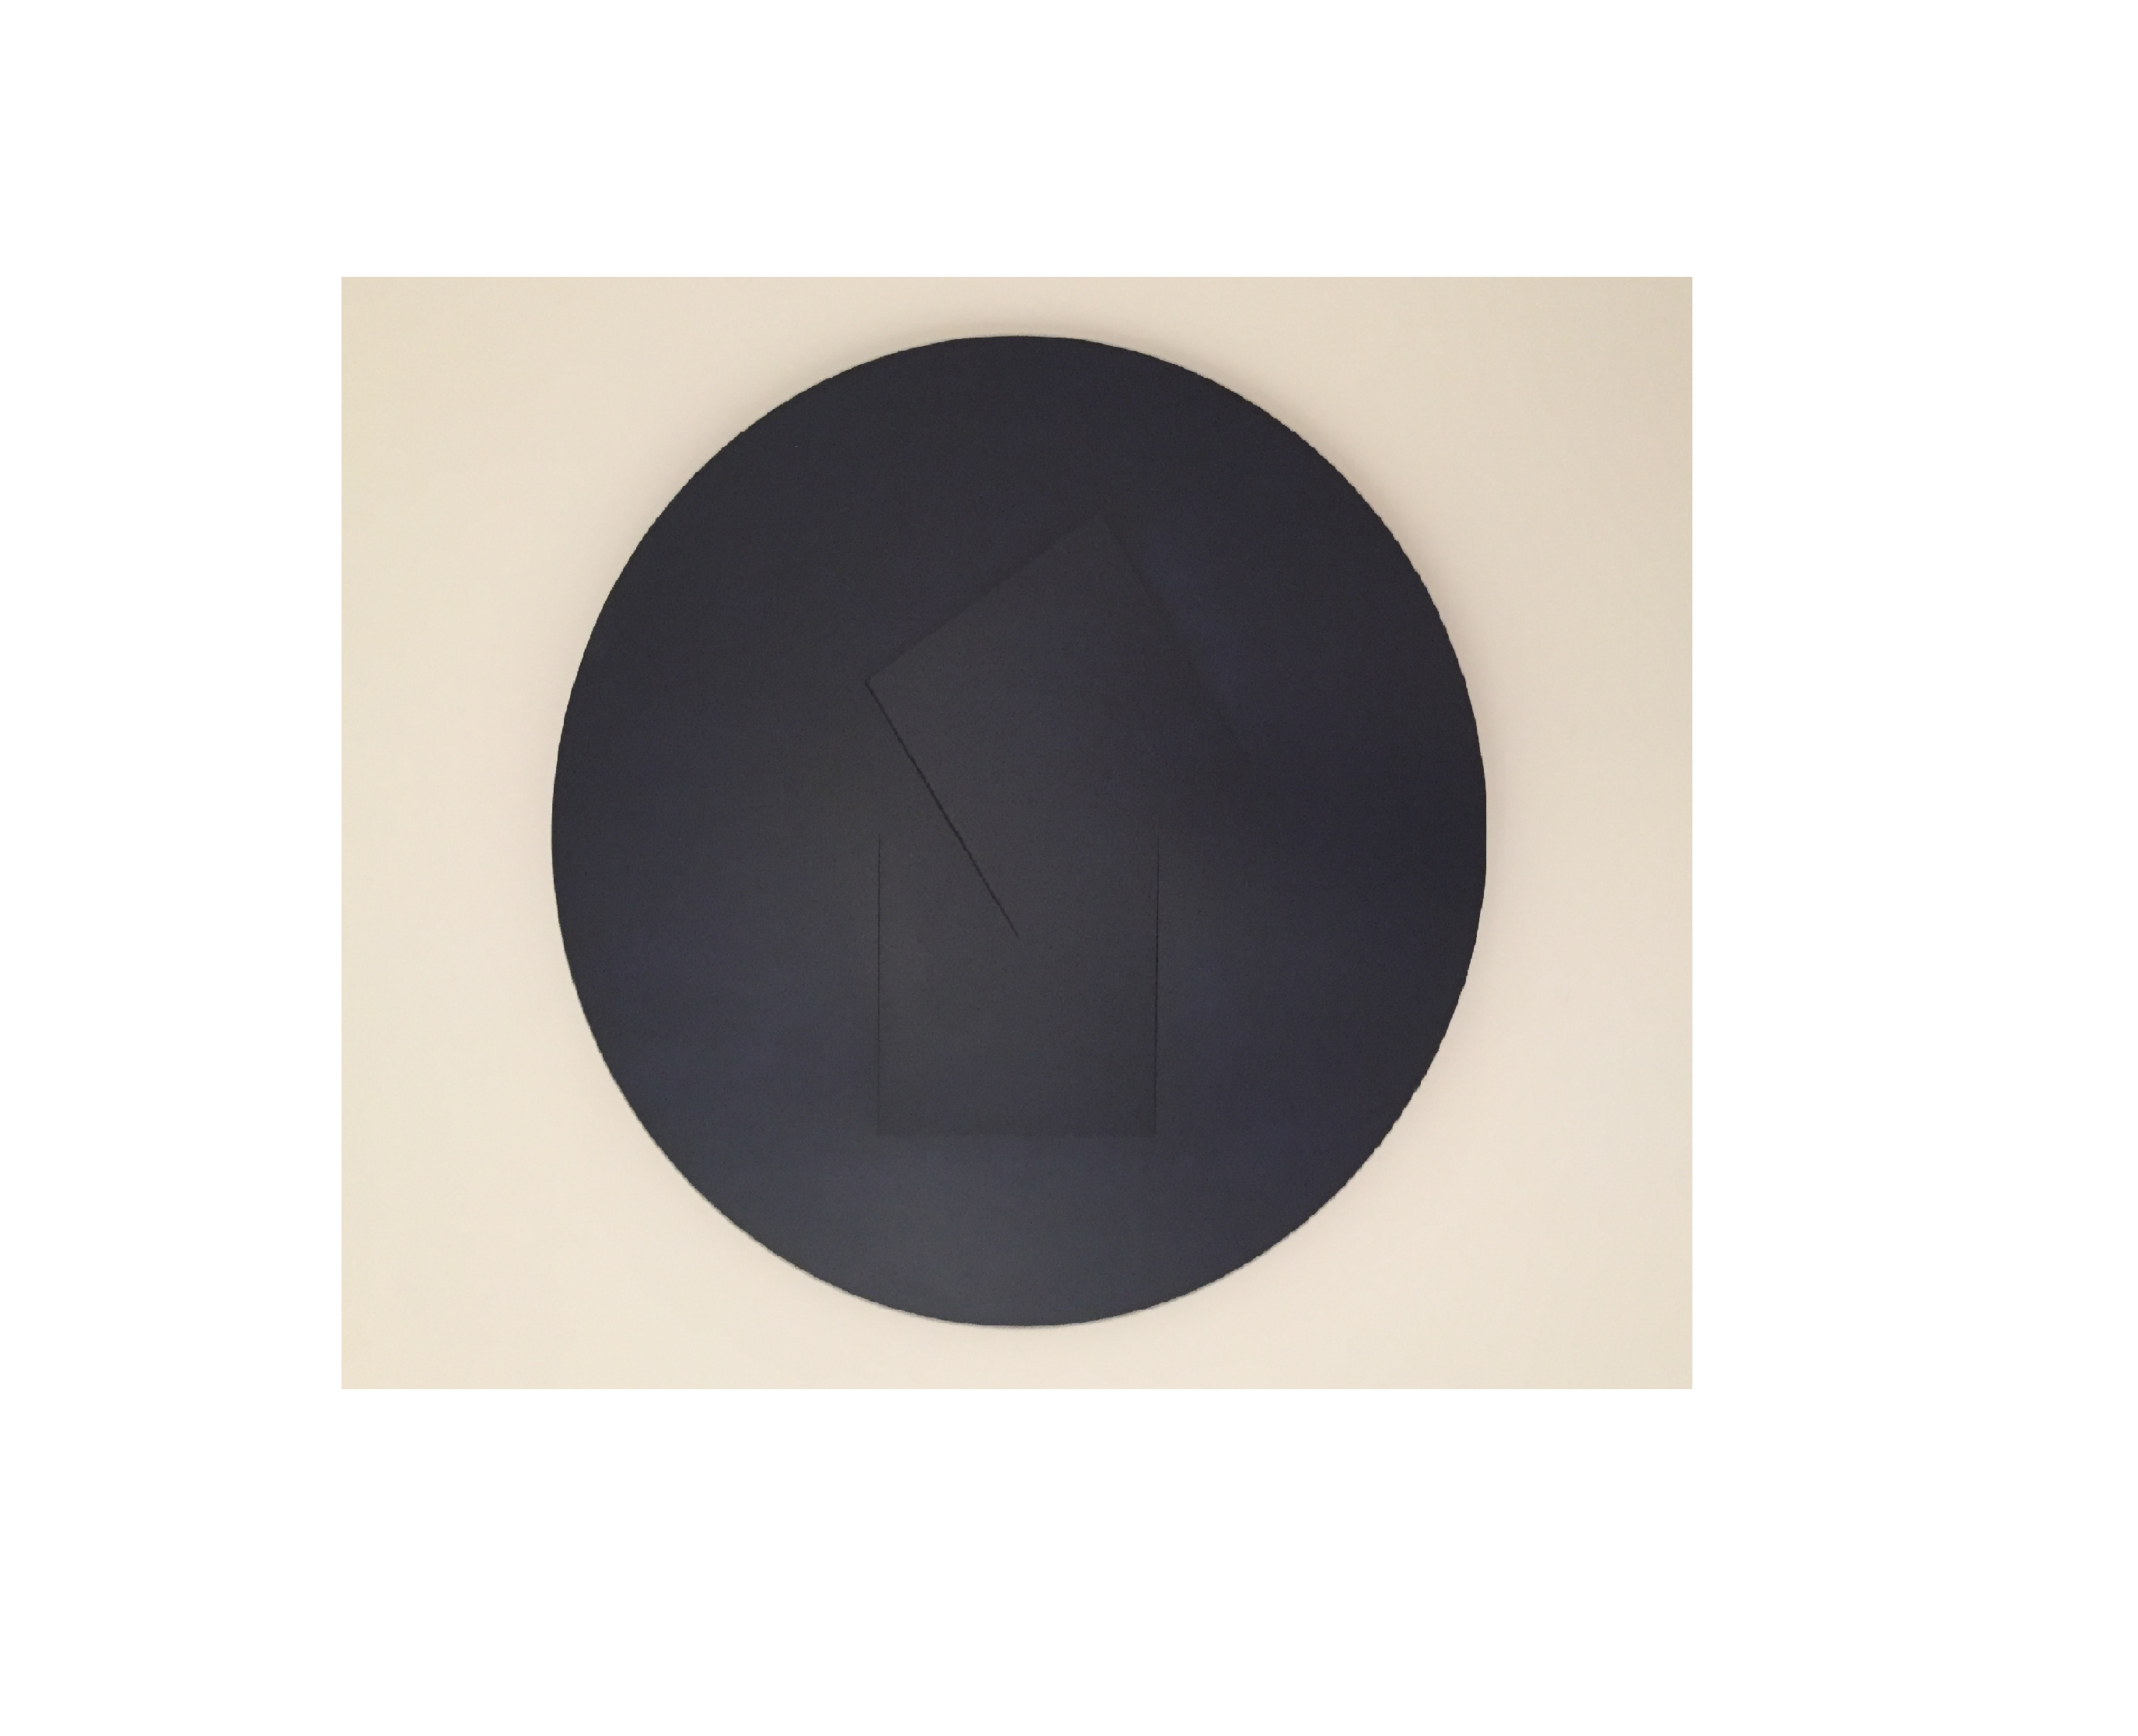 S/T, 2018. Madera laminada pintada al horno. 60 (diámetro) x 3 cm.